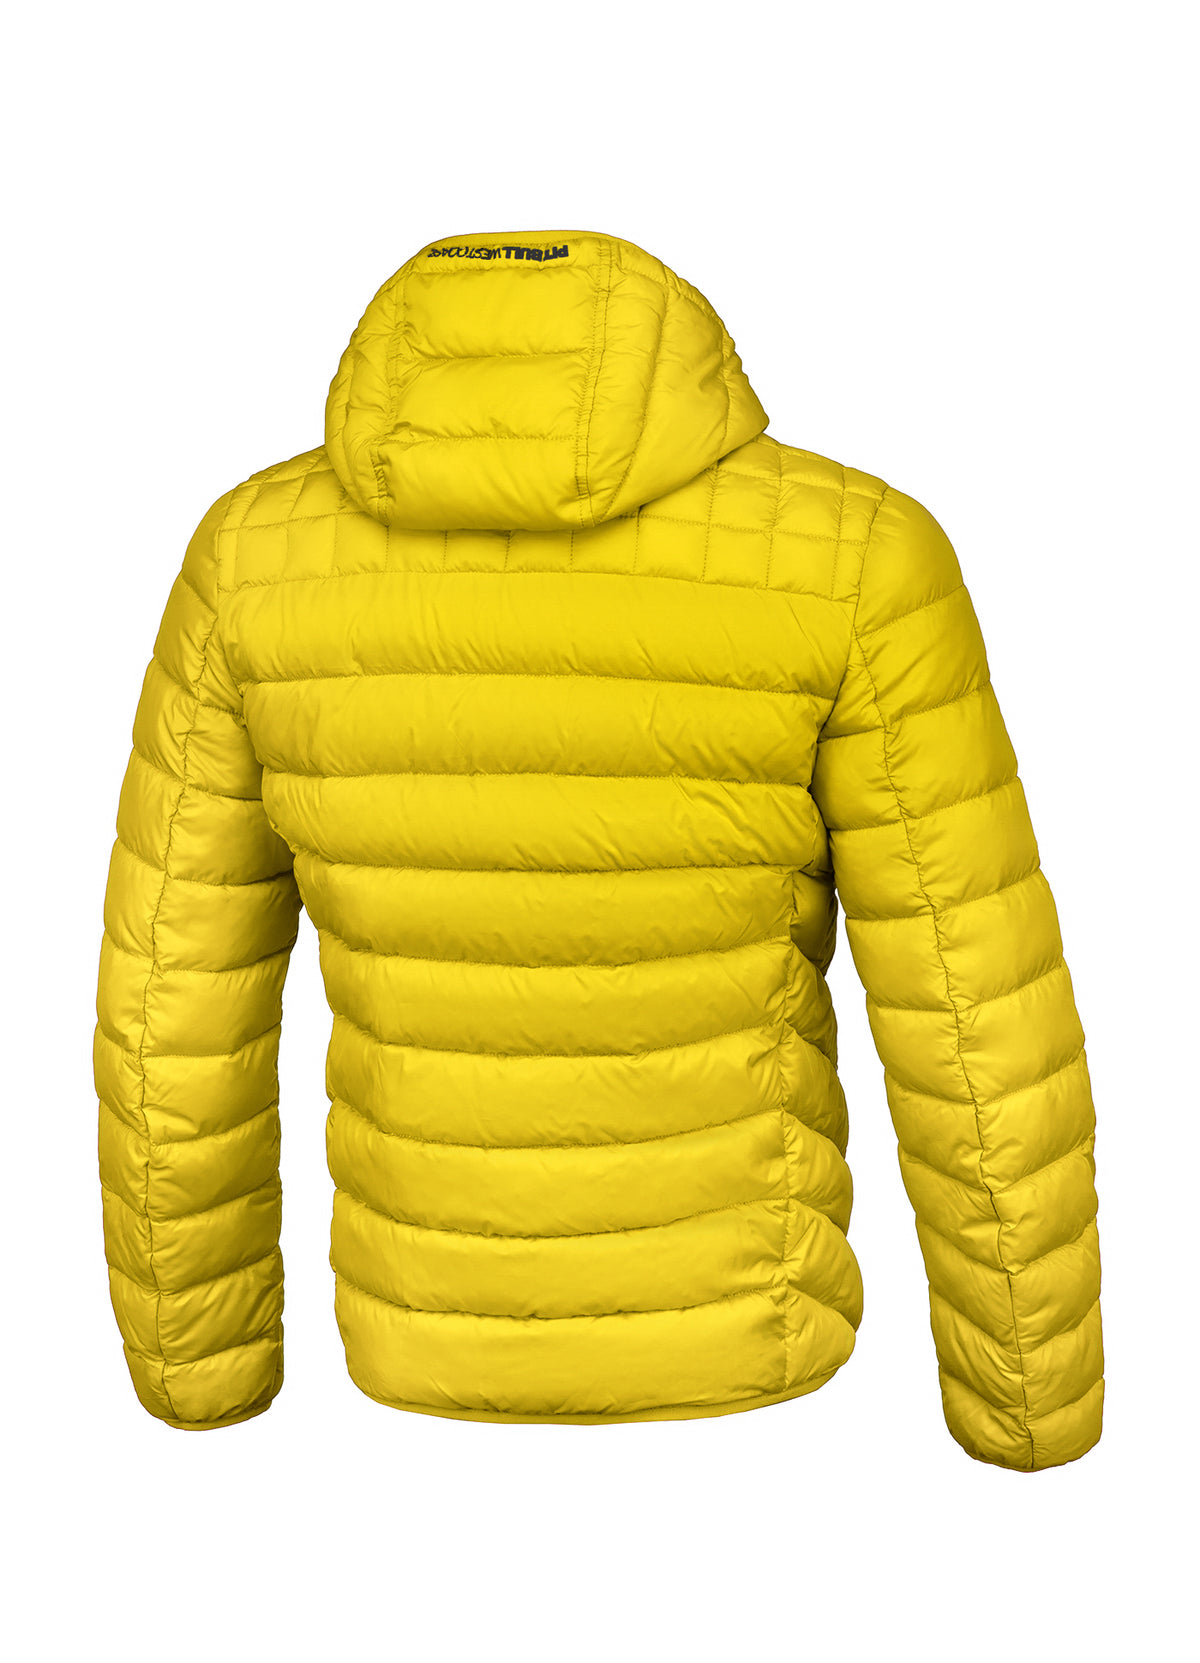 SEACOAST II Yellow Jacket.